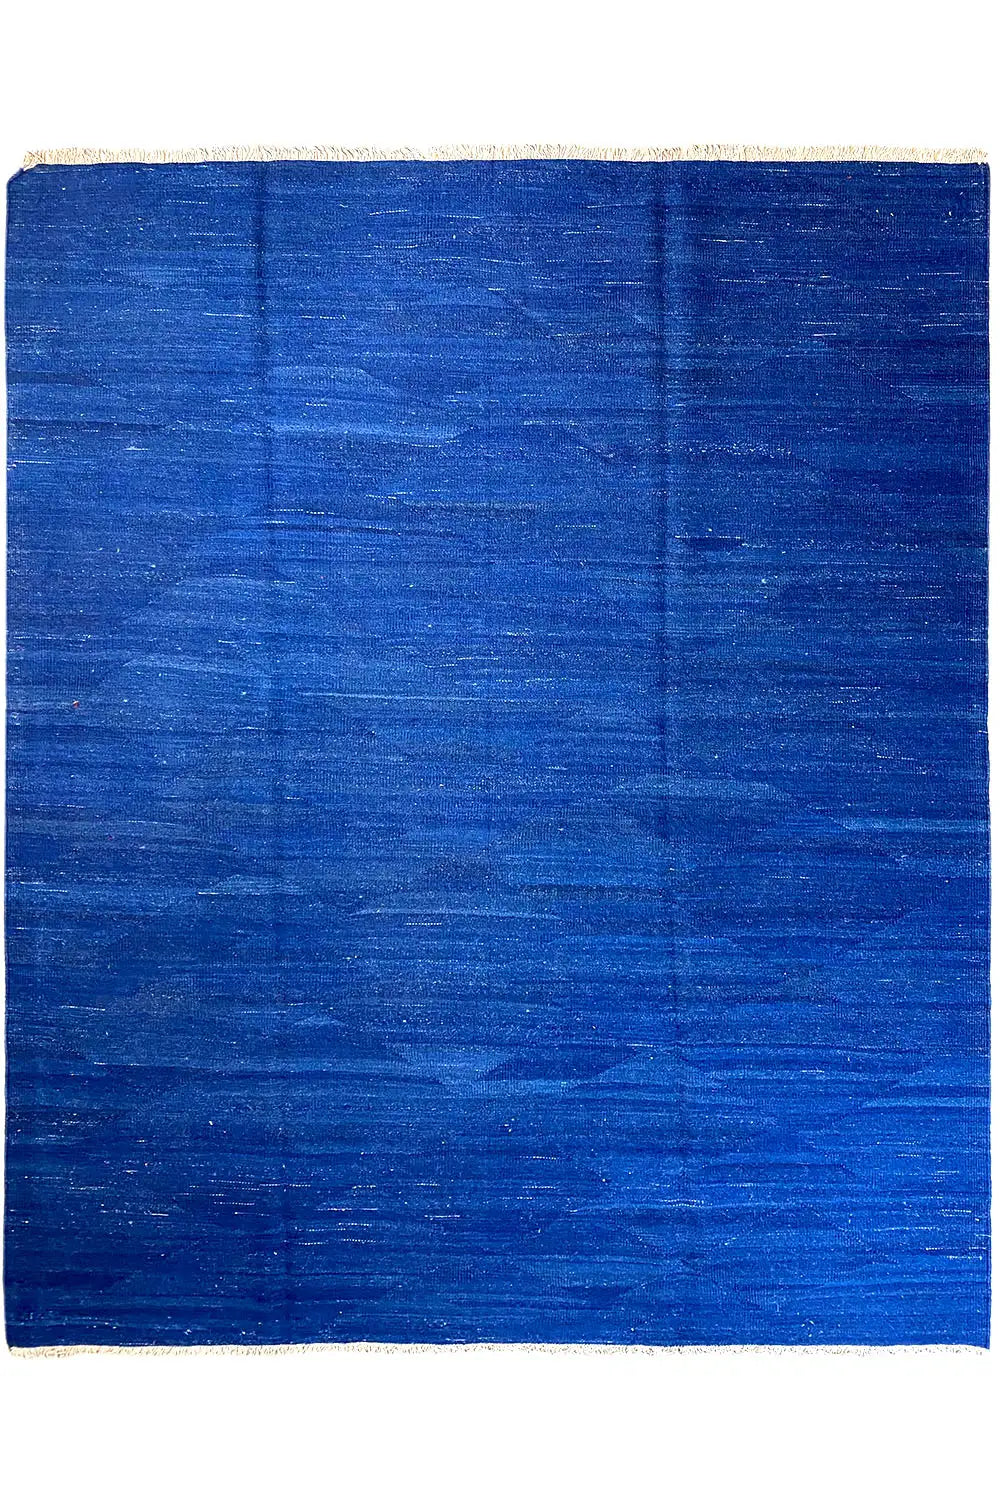 Kilim Qashqai  - 203145 (302x202cm) - German Carpet Shop